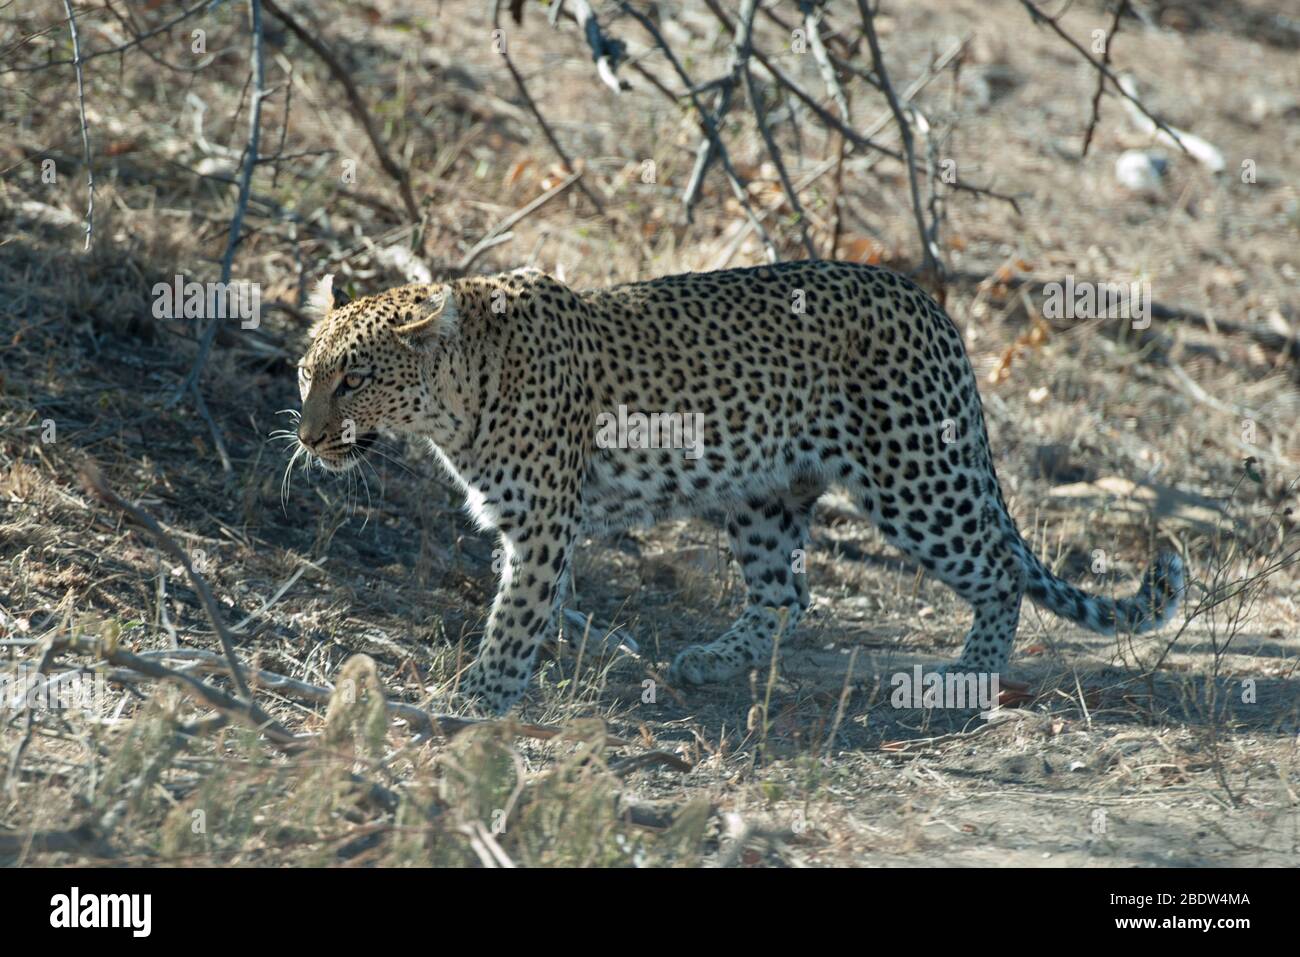 Léopard, Panthera pardus, vulnérable, à pied, Parc national Kruger,Province de Mpumalanga, Afrique du Sud, Afrique Banque D'Images